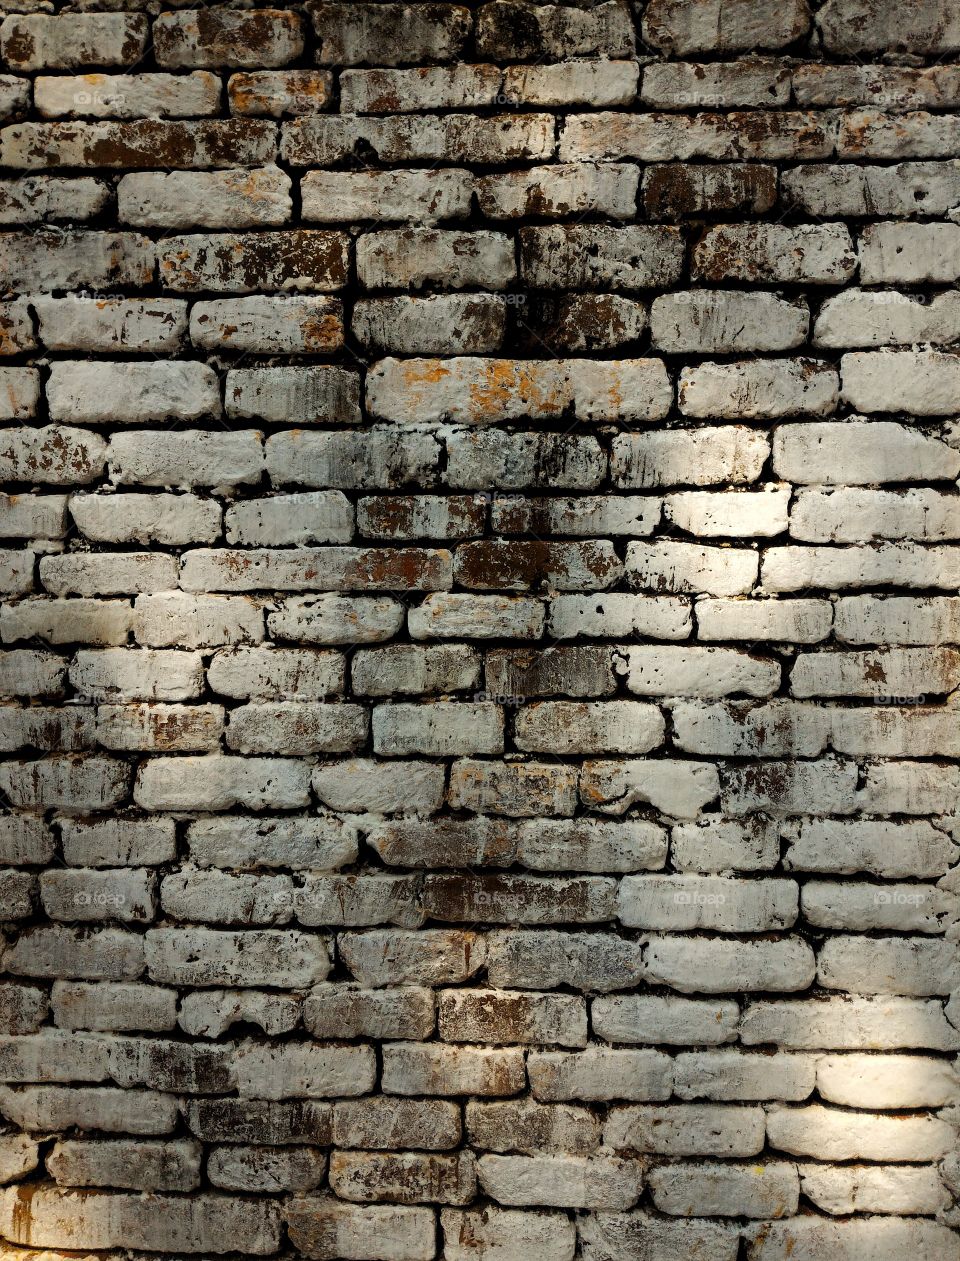 Surface of brick walls